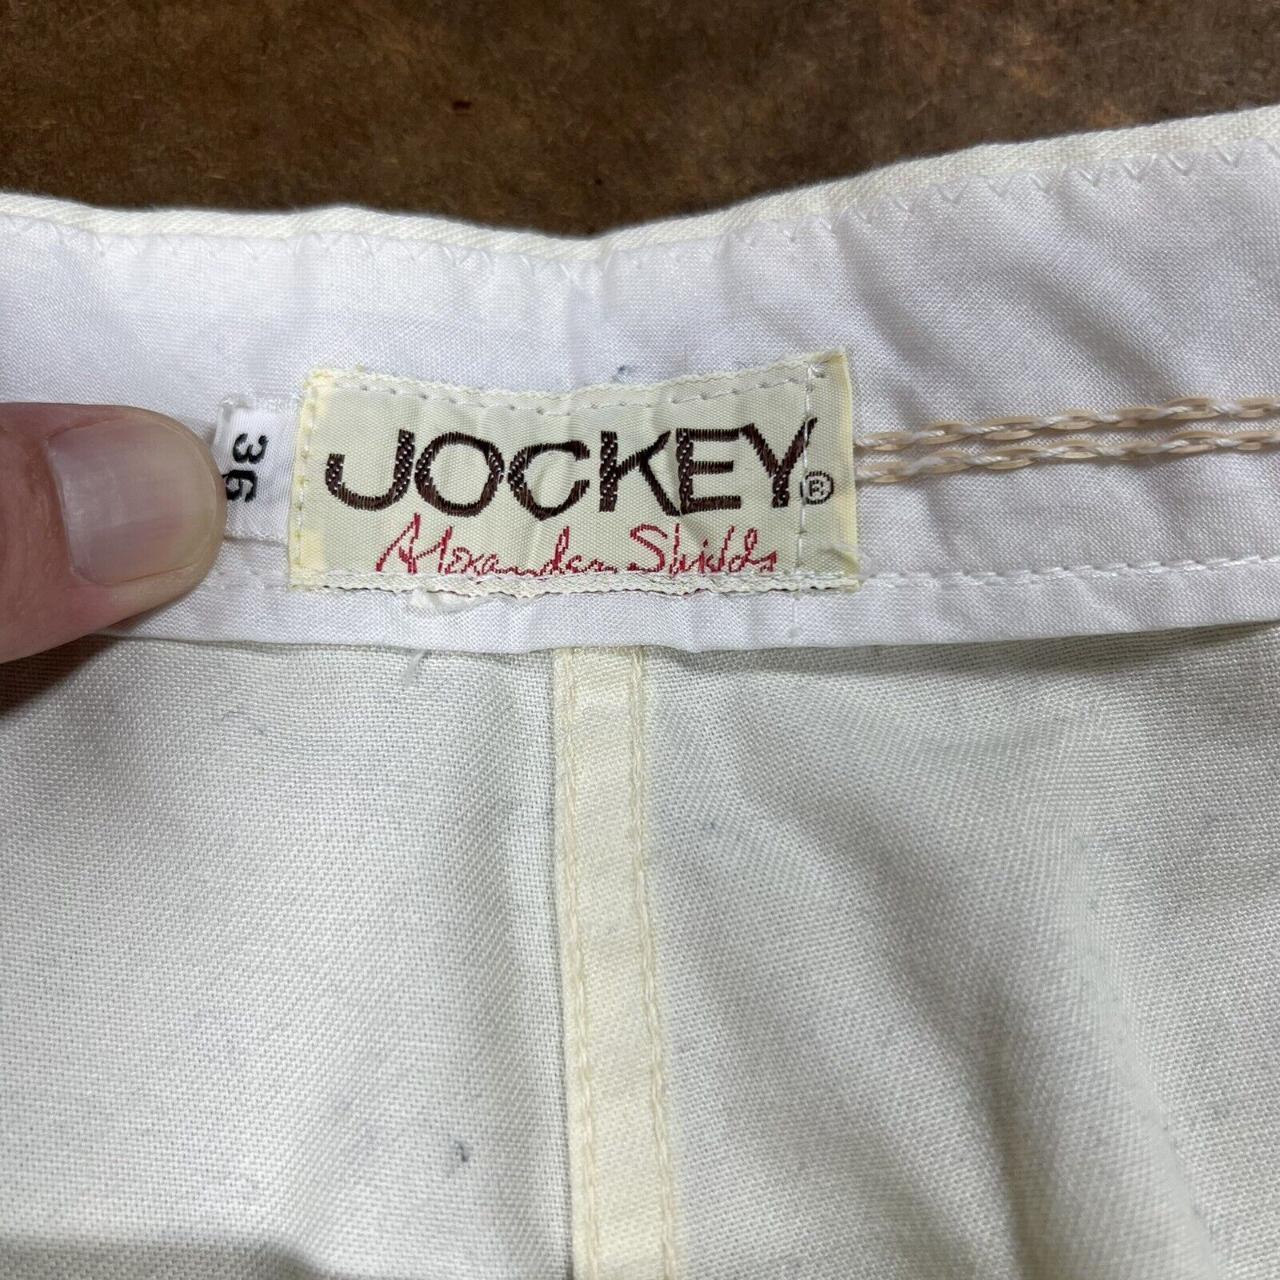 Jockey Men's White Shorts (3)